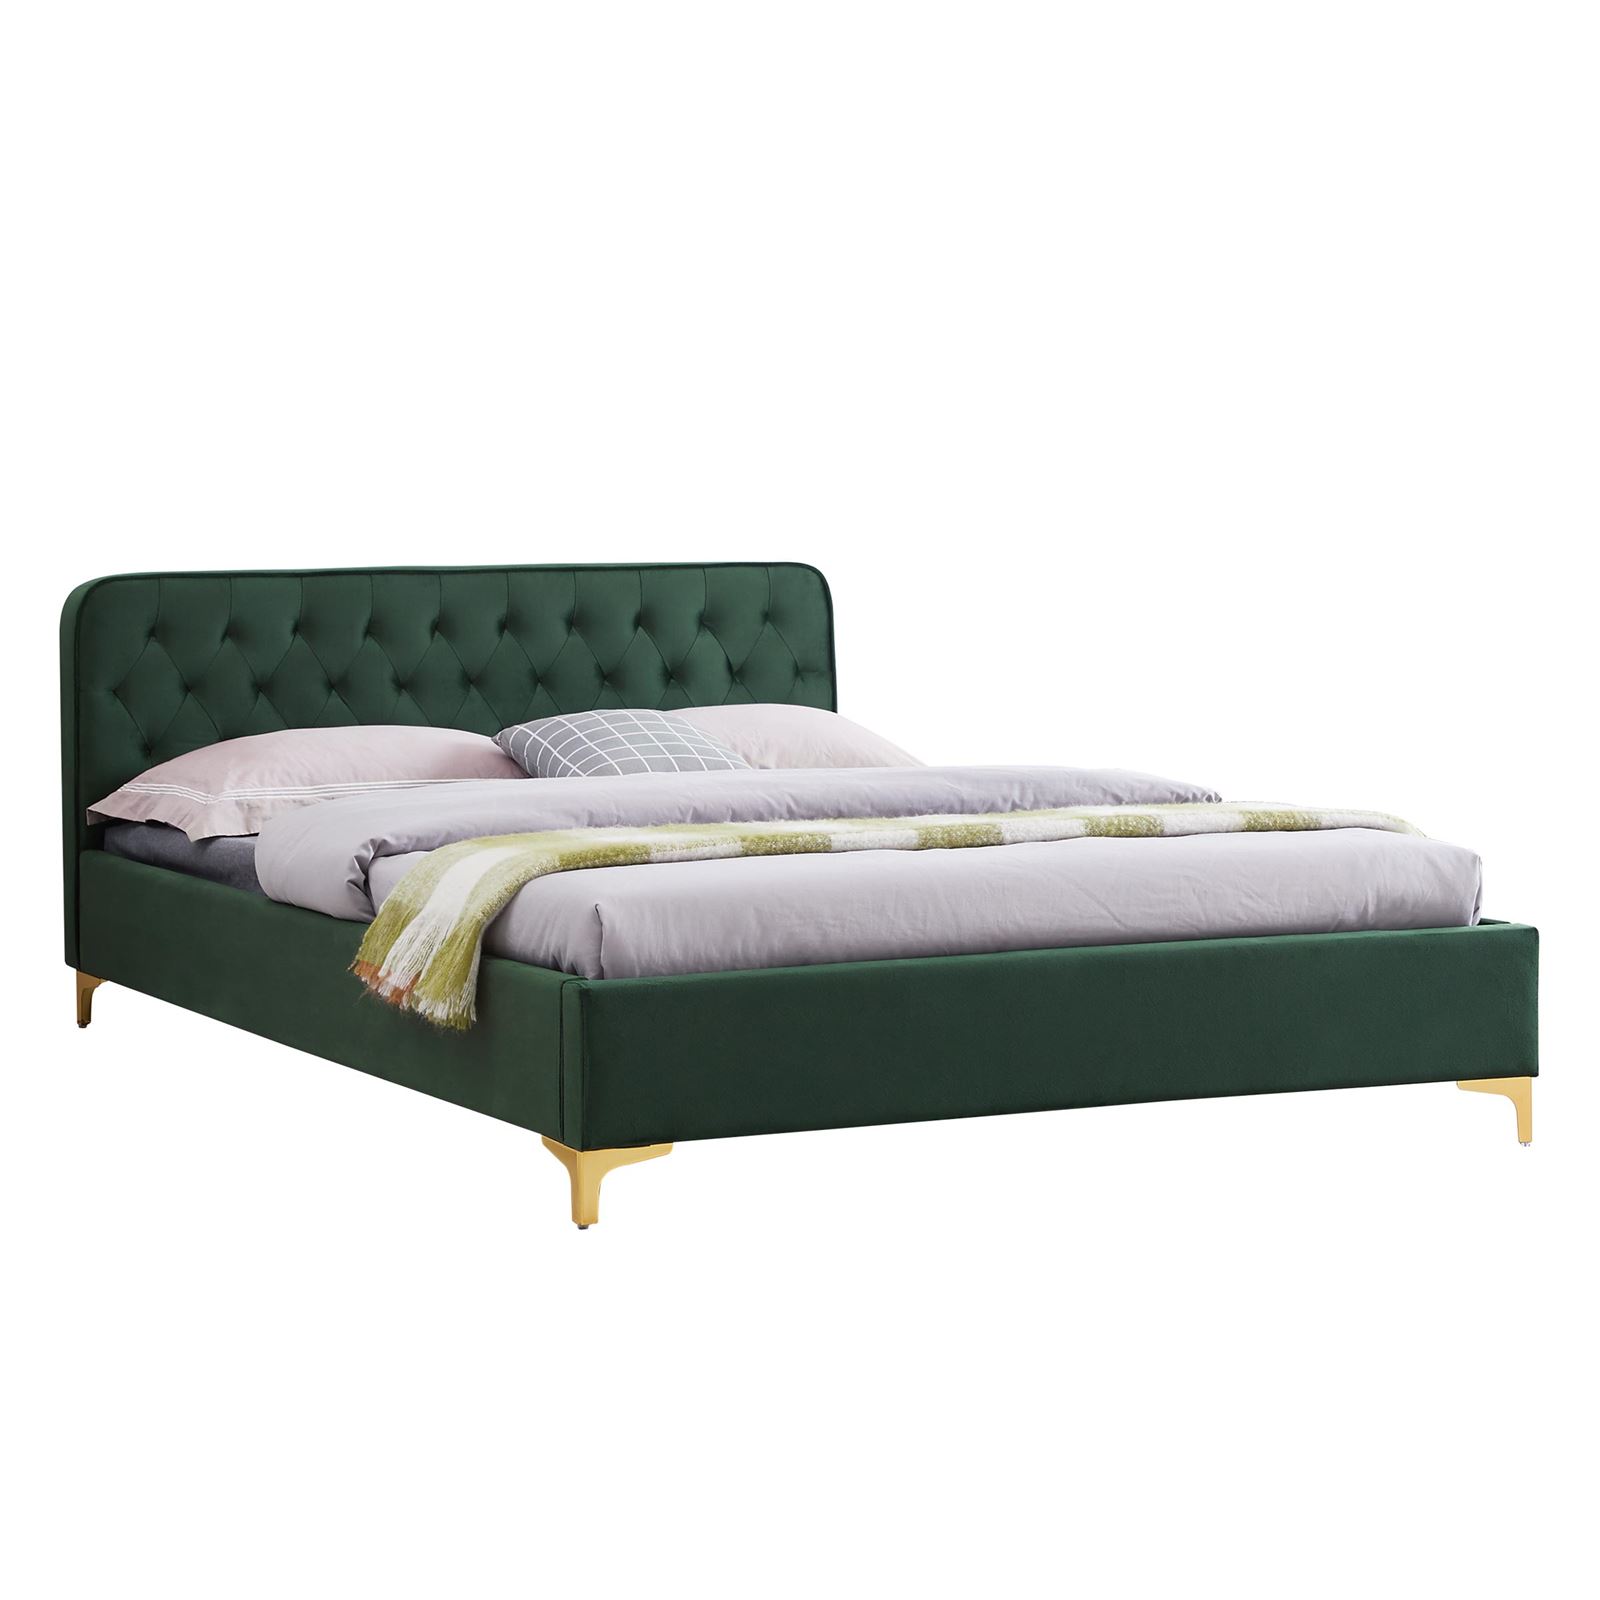 180 x 200 cm Bett Doppelbett Glamour mit Lattenrost aus Metallrahmen und Kristallknöpfen Bettkasten Polsterbett Bettgestell Schlafzimmer 